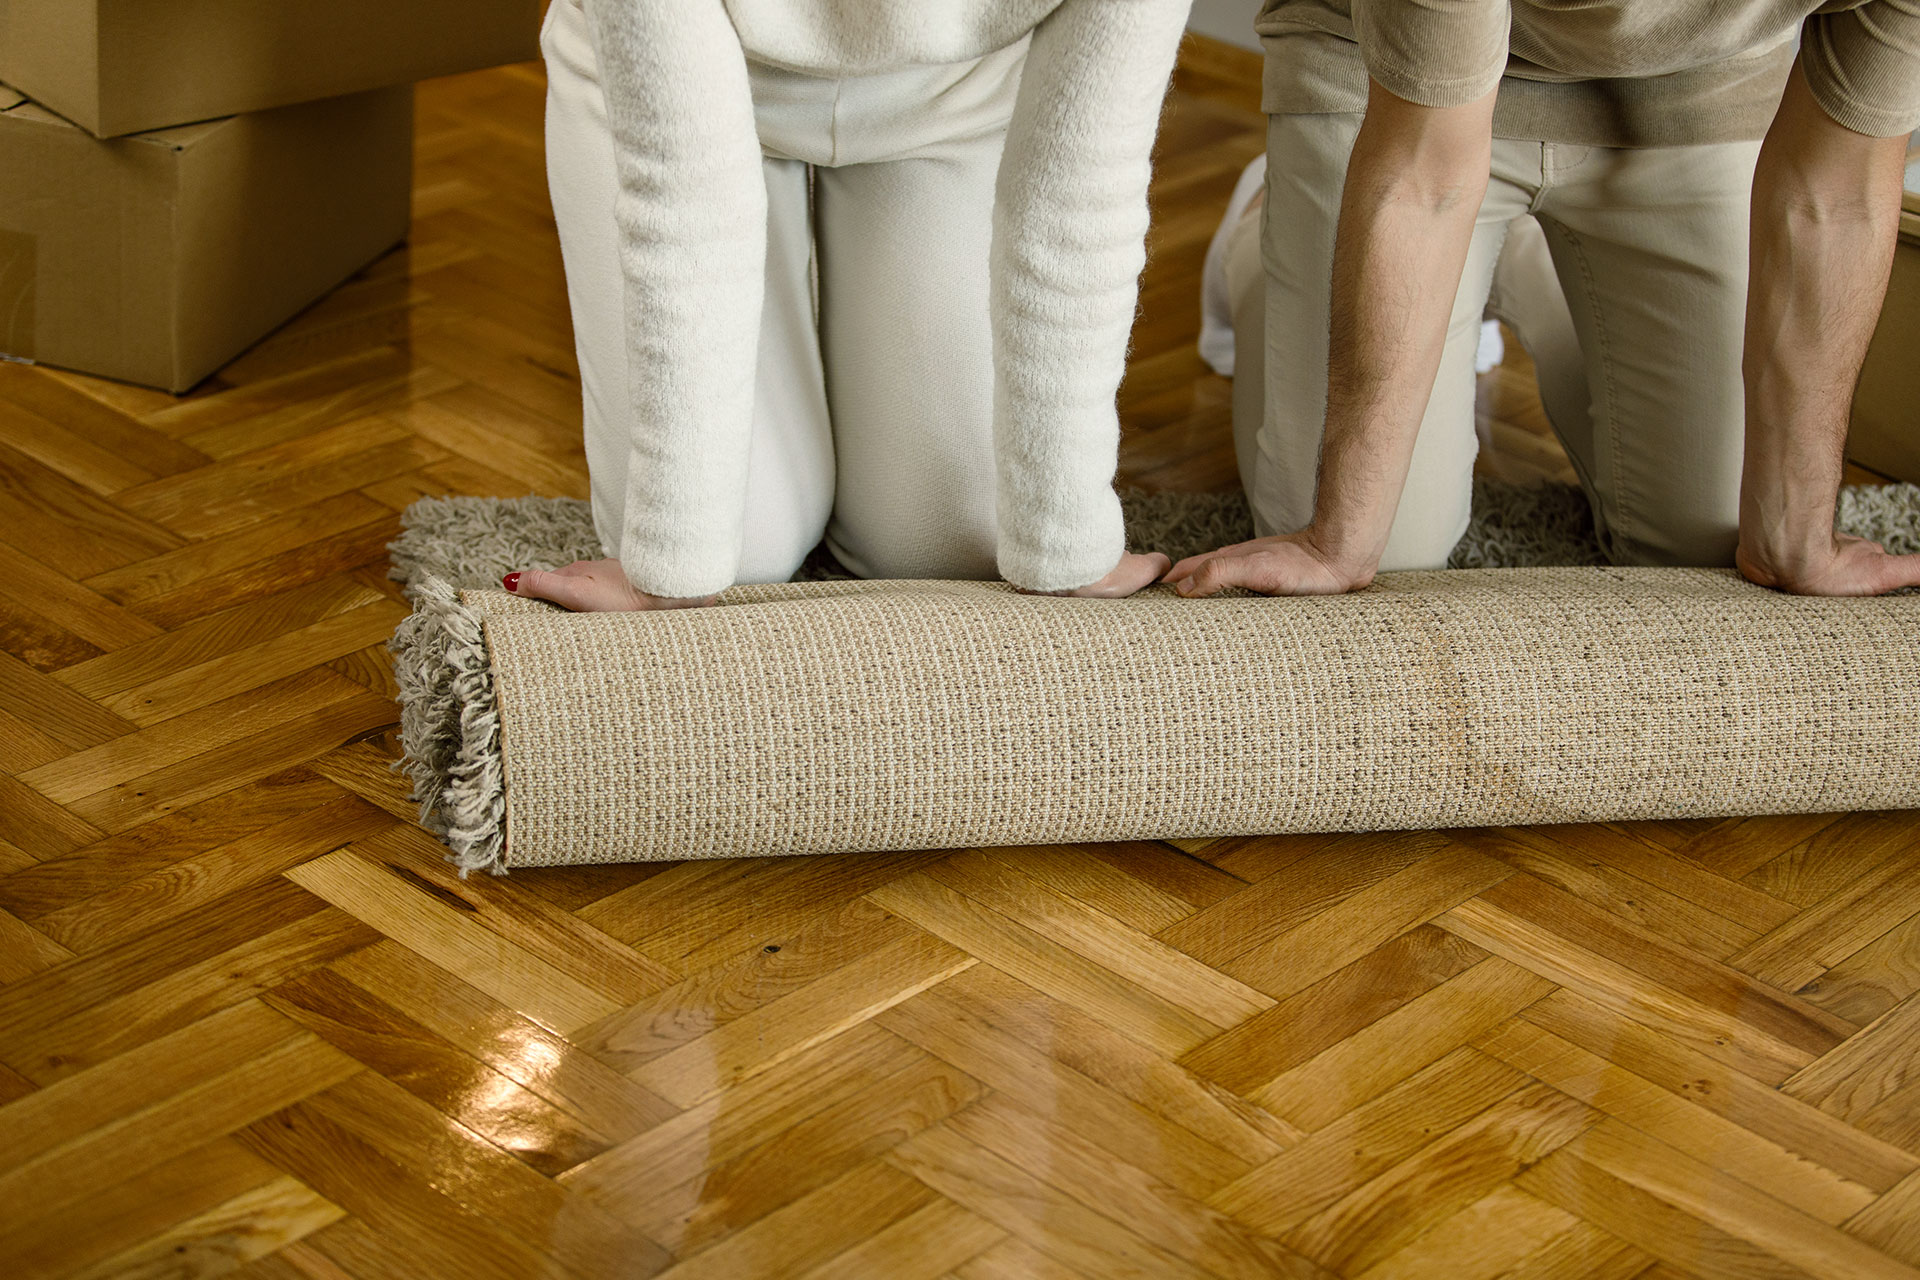 Zwei Personen rollen einen Teppich aus – Auszubildende haben bezahlbaren Wohnraum gefunden!